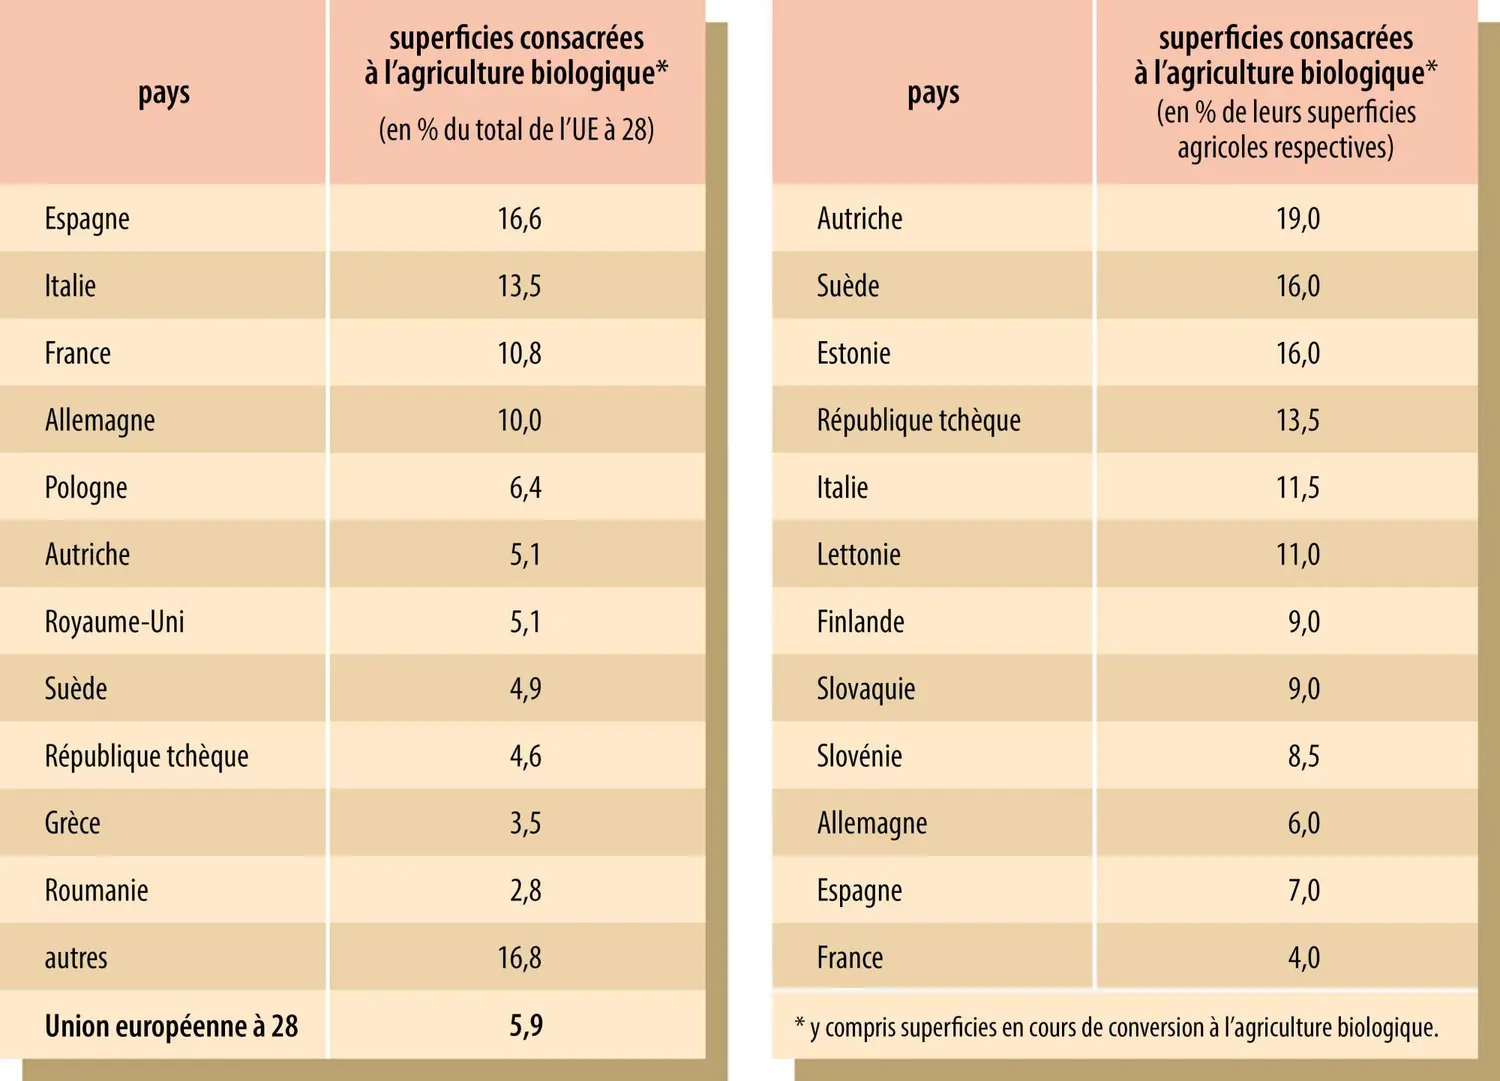 L’agriculture biologique dans les pays de l’Union européenne à 28 (en 2014)